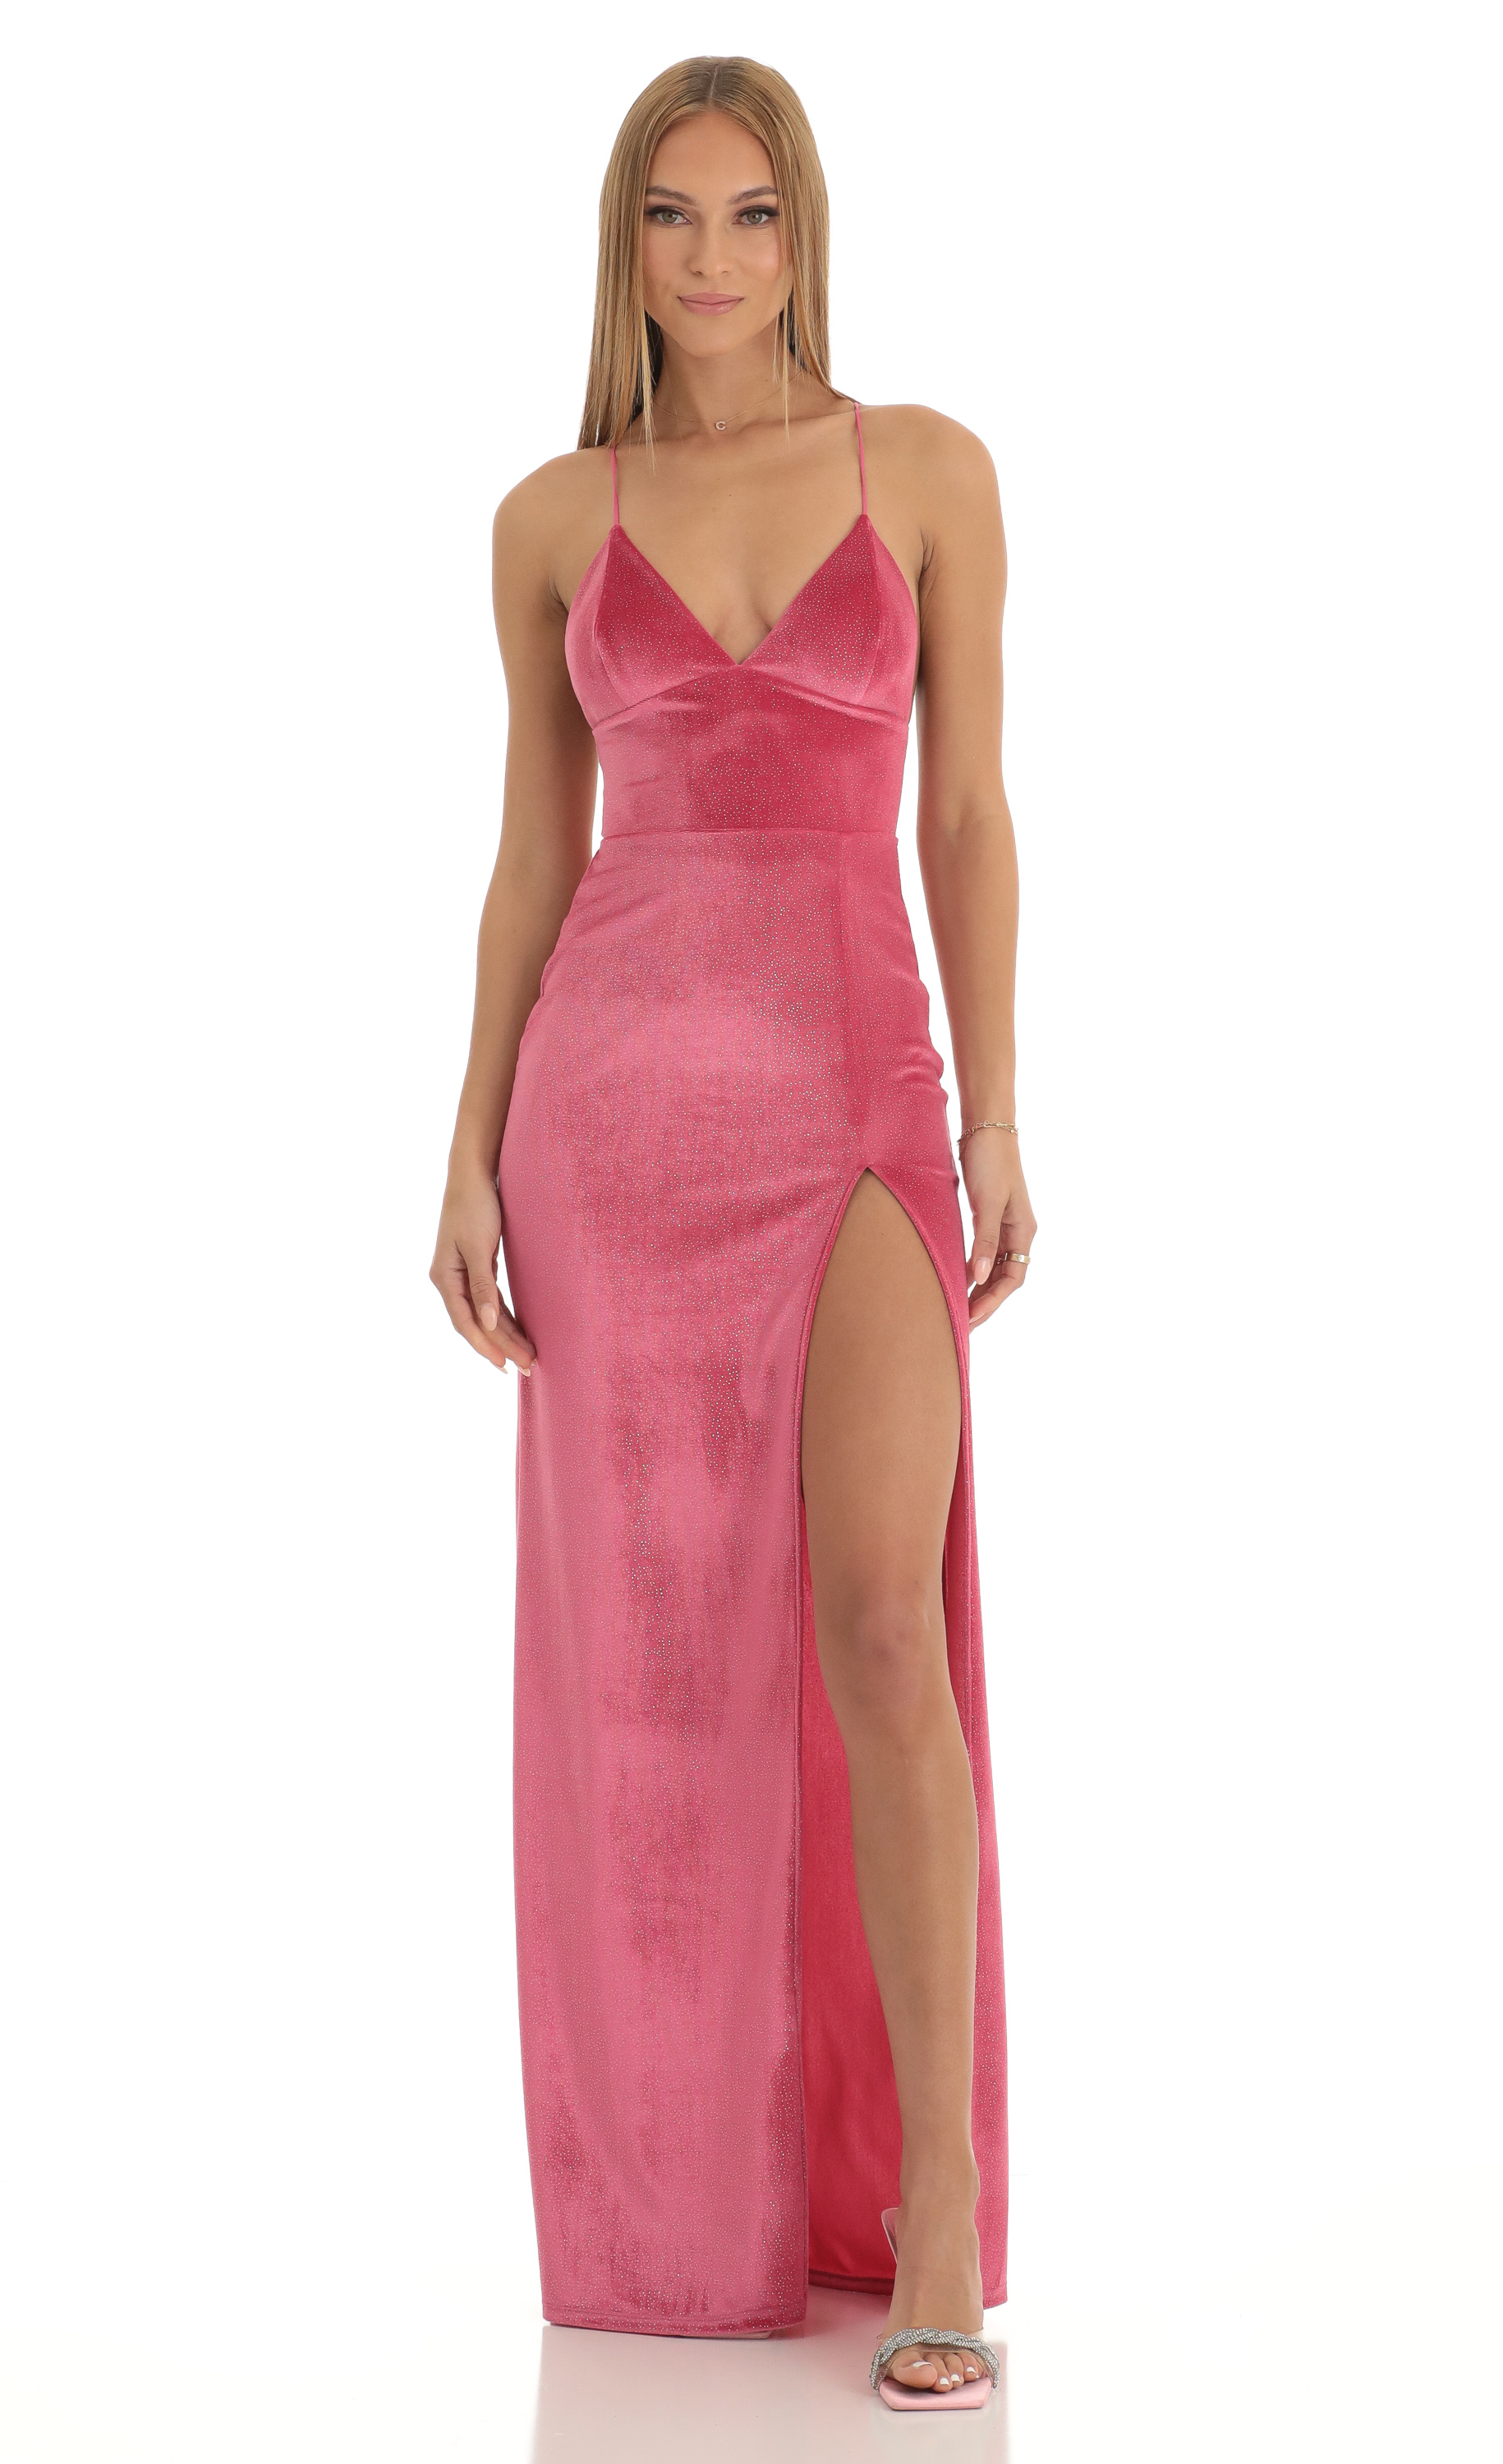 Kimberly Velvet Glitter High Slit Maxi Dress in Hot Pink